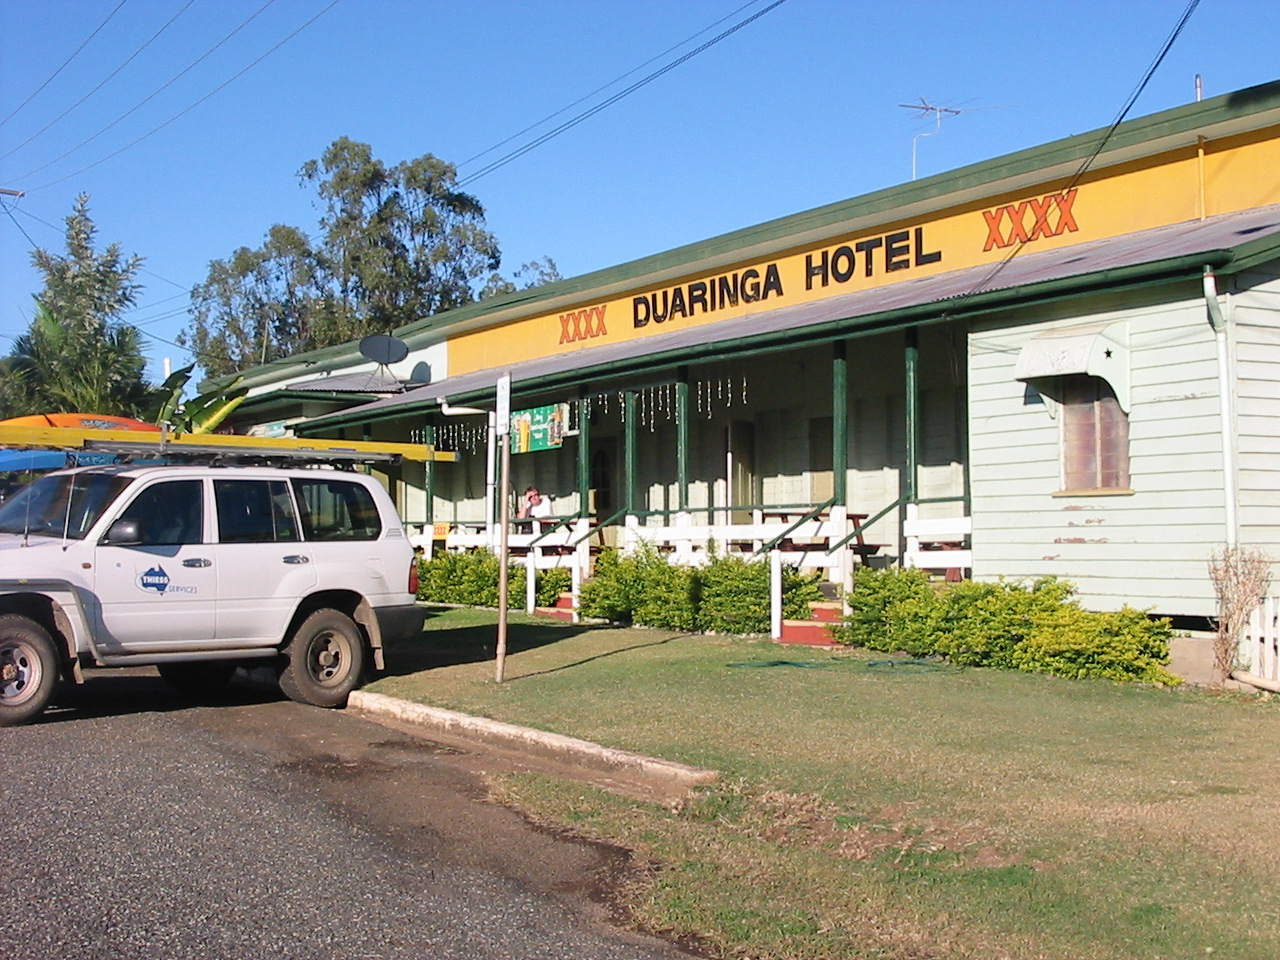 Duaringa Hotel Queensland